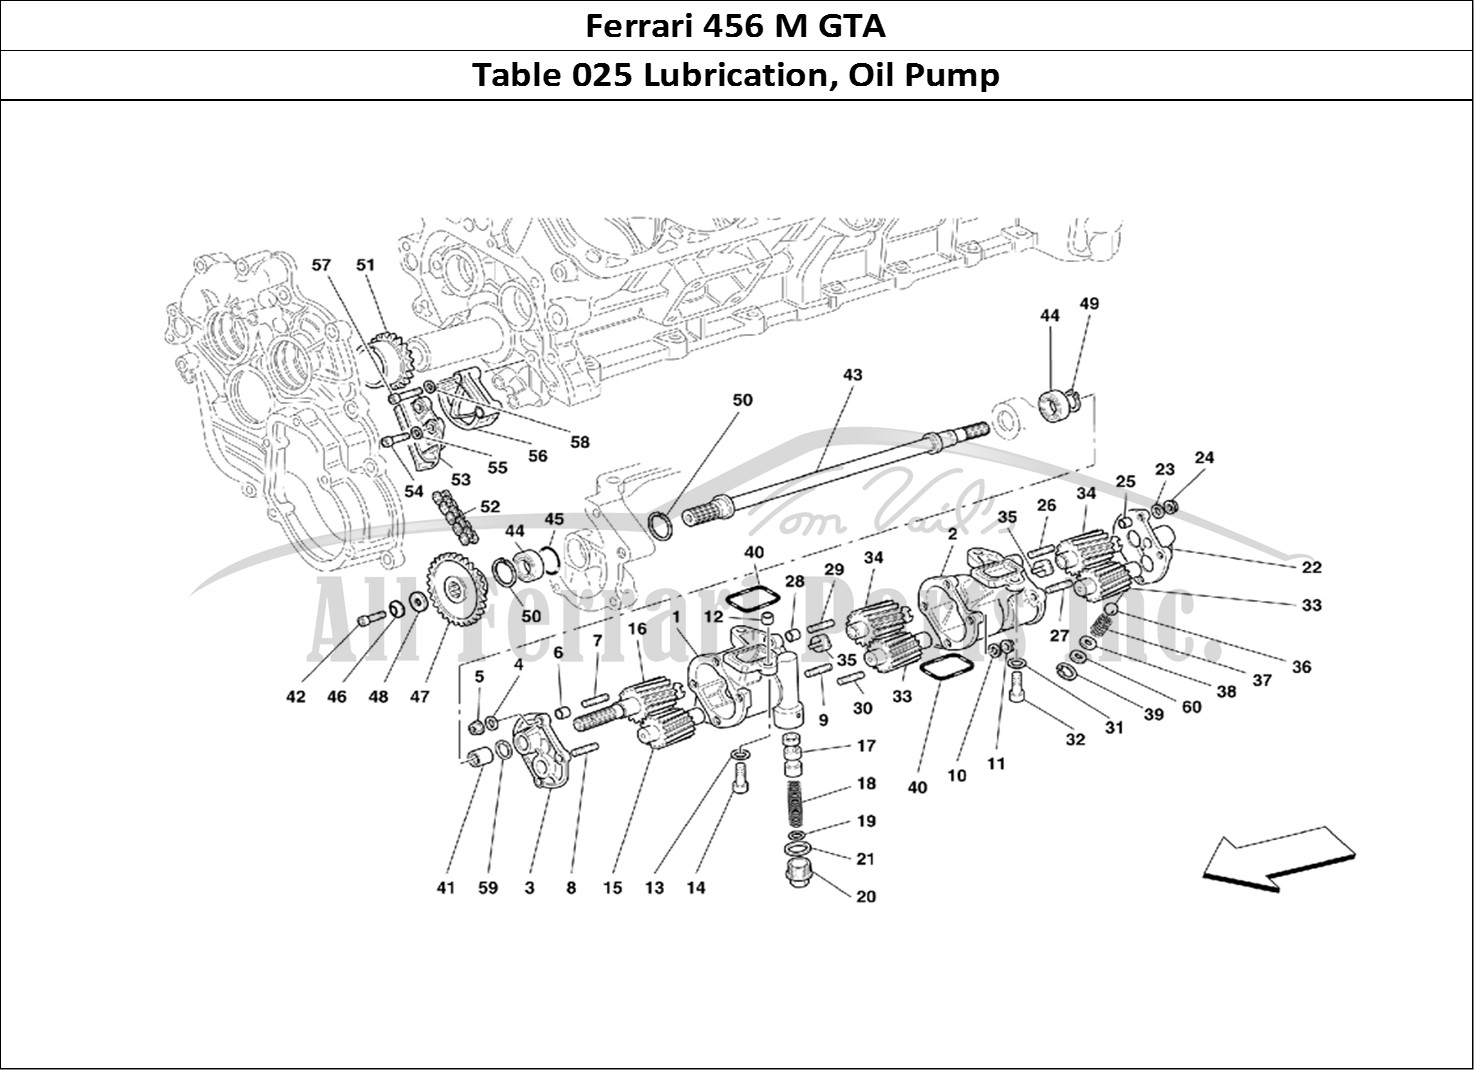 Ferrari Parts Ferrari 456 M GT Page 025 Lubrication - Oil Pumps